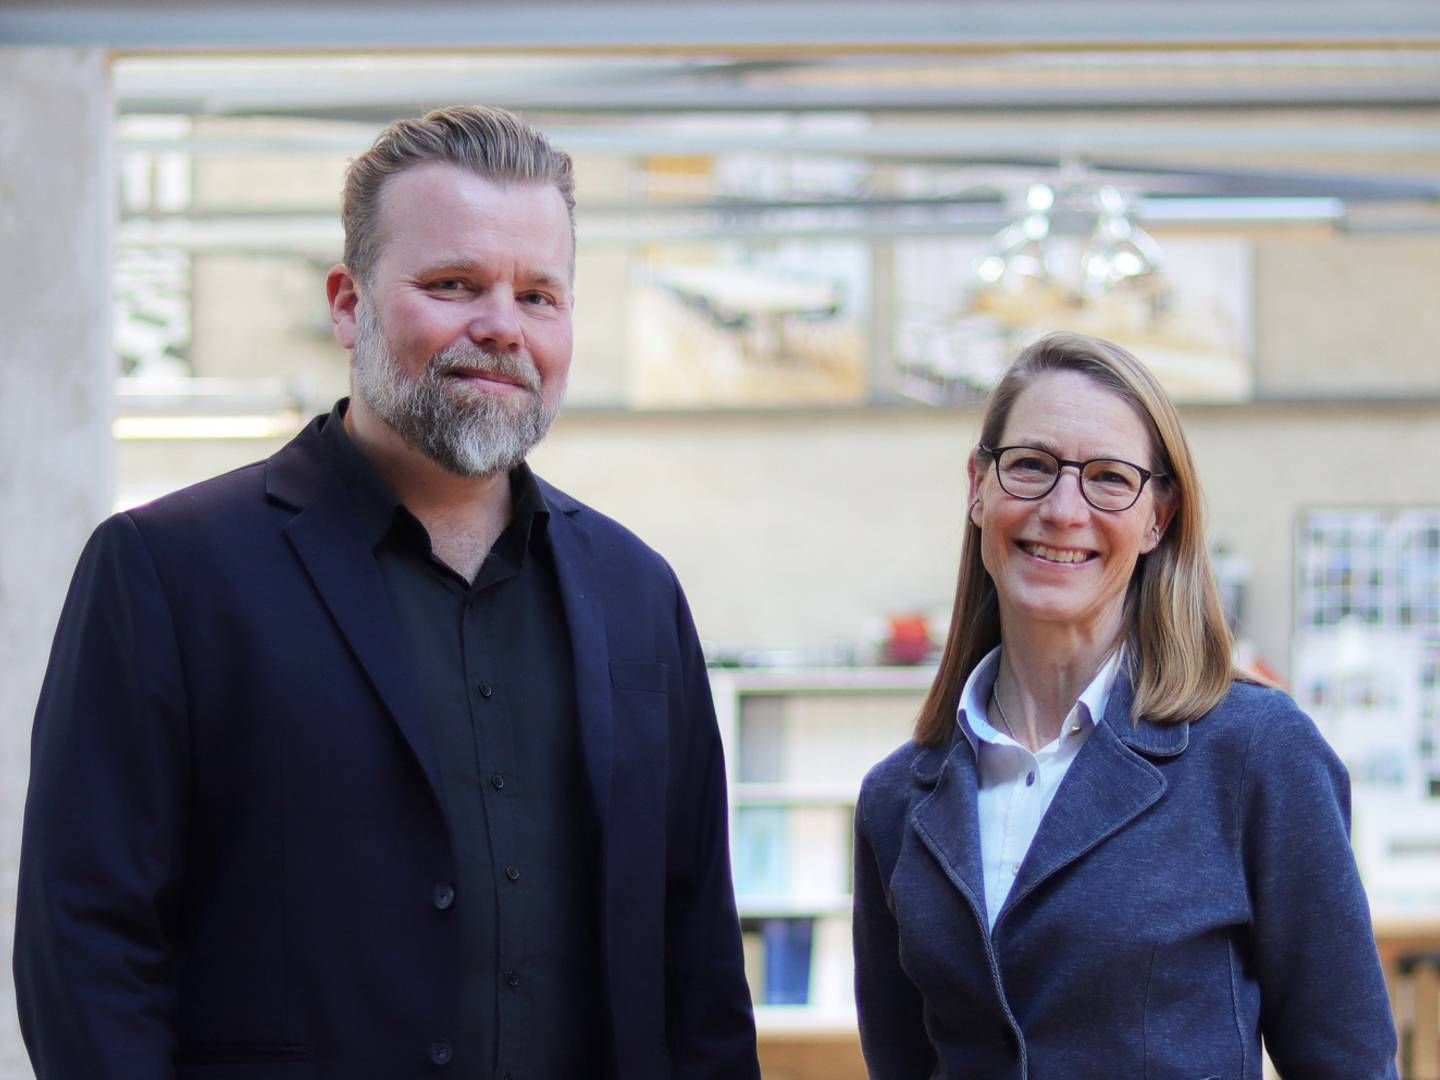 Fra venstre: Rasmus Klausen, adm. direktør i H+ Arkitekter og Charlotte Barlach, adm. direktør i Ole Hagen Arkitekter. | Foto: PR / H+ Arkitekter